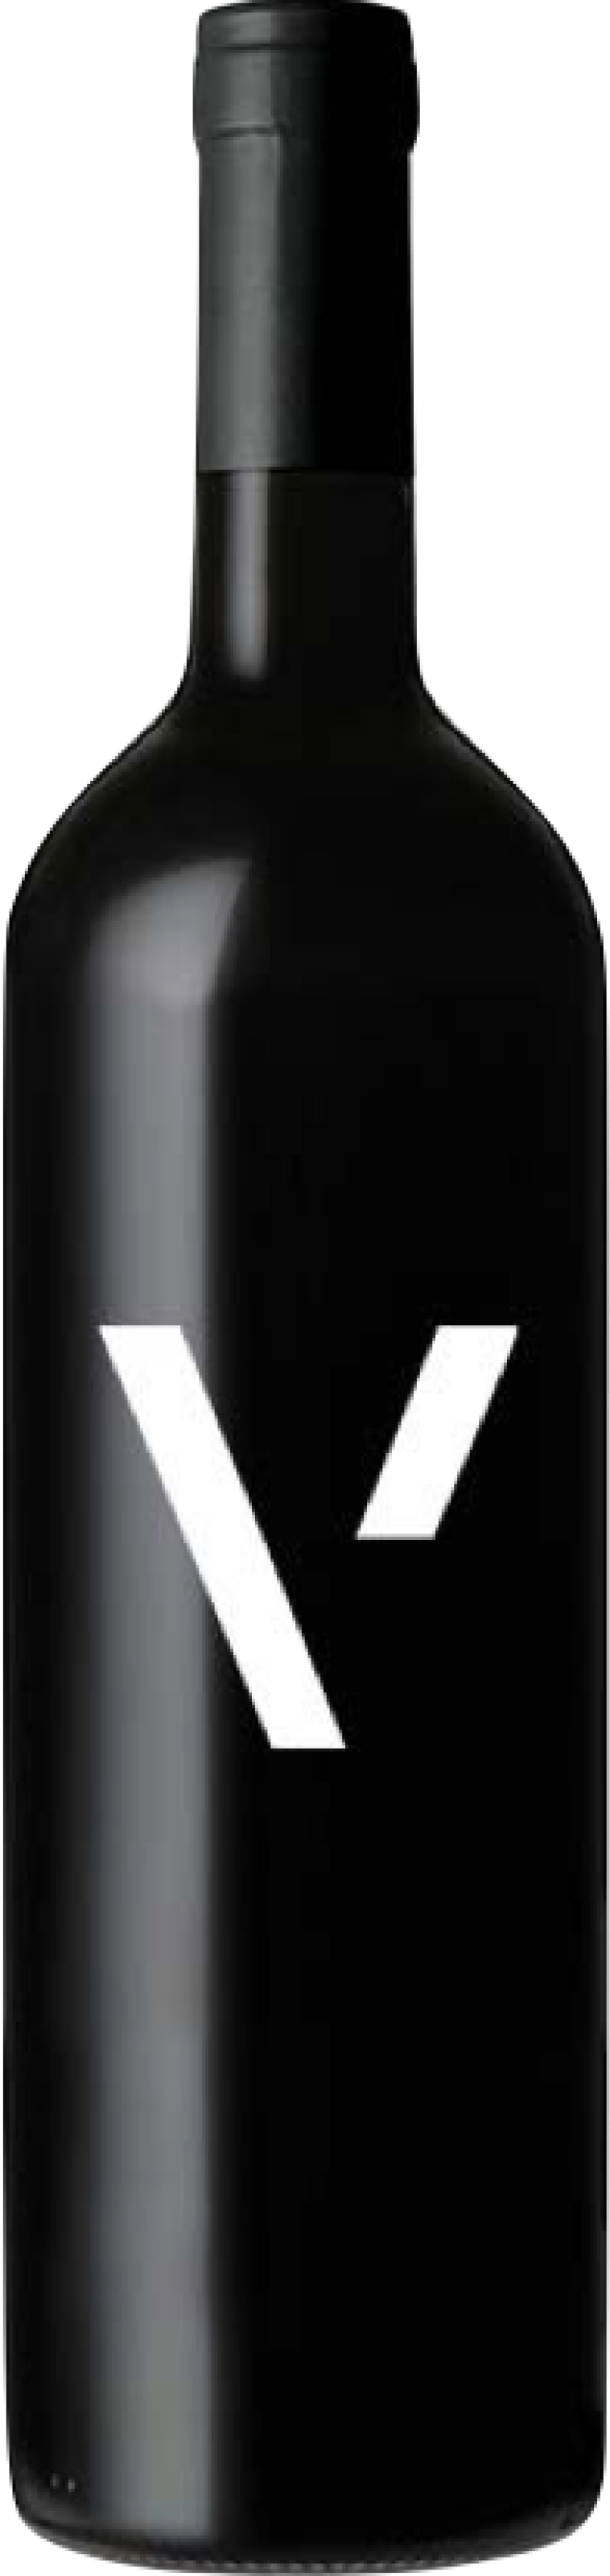 Weinflasche in schwarz mit weißem Vioneers Symbol